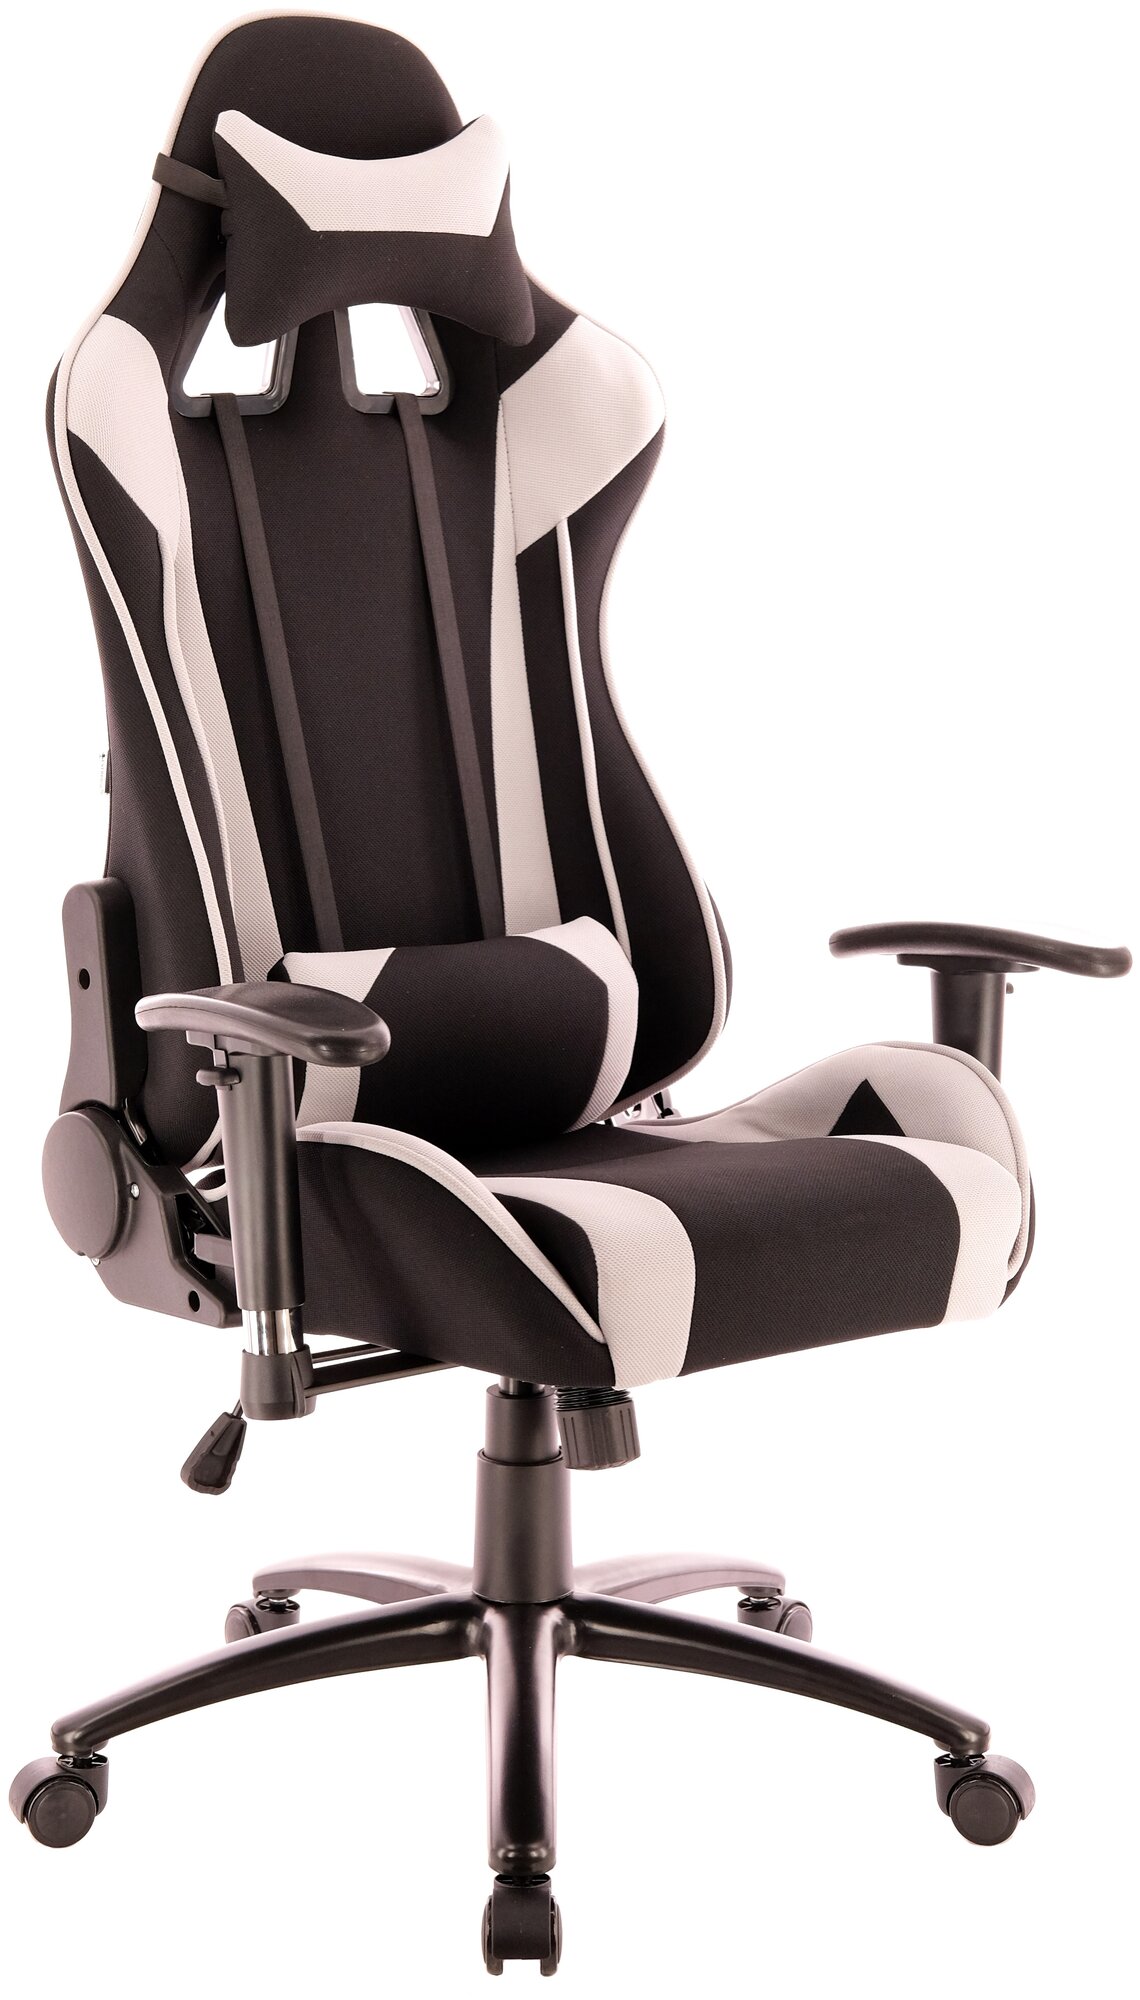 Игровое кресло EverProf Lotus S4, обивка: текстиль